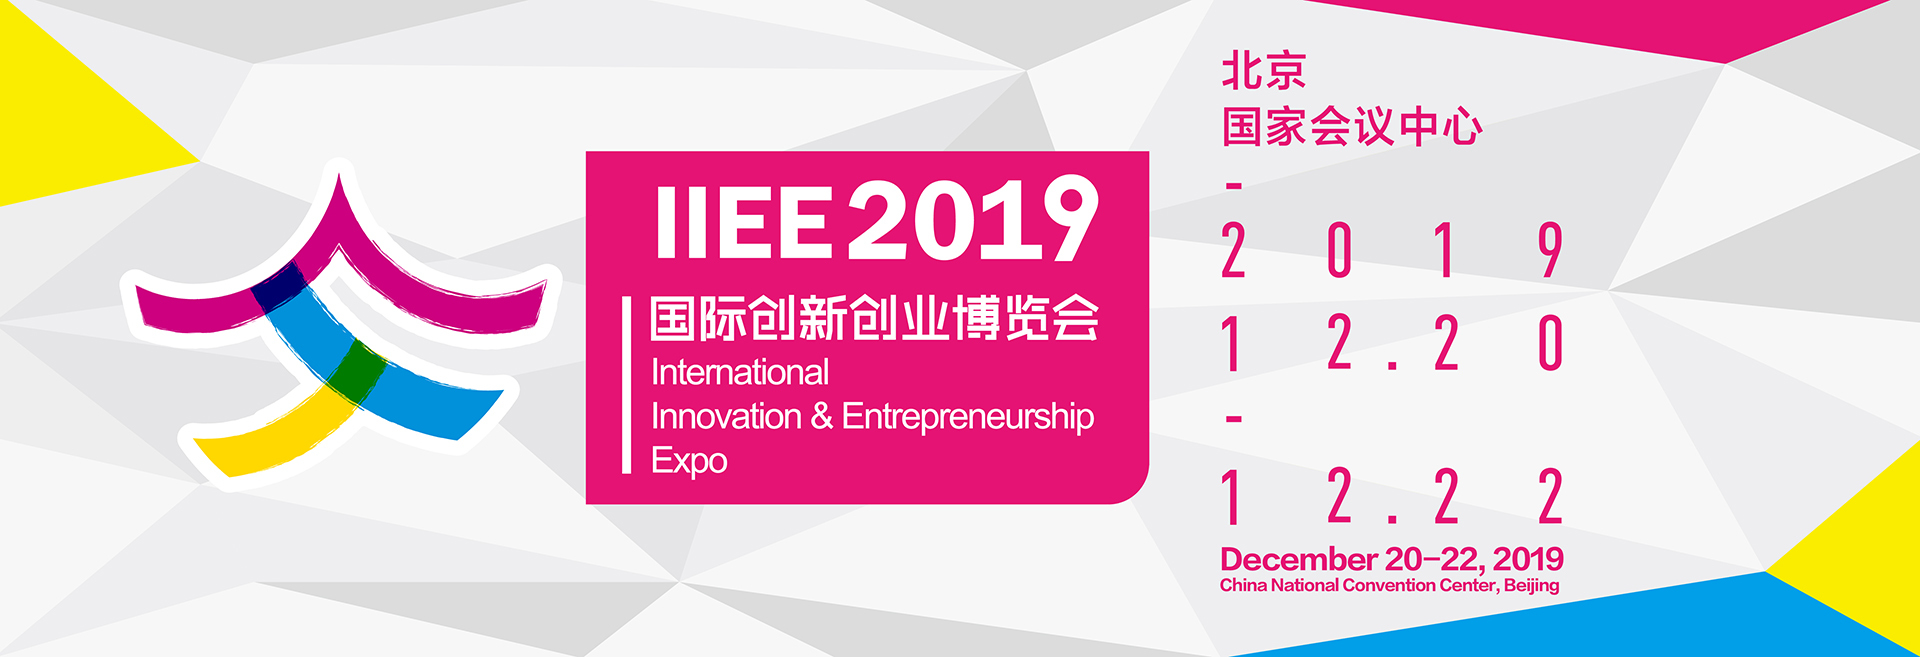 第四届国际创新创业博览会